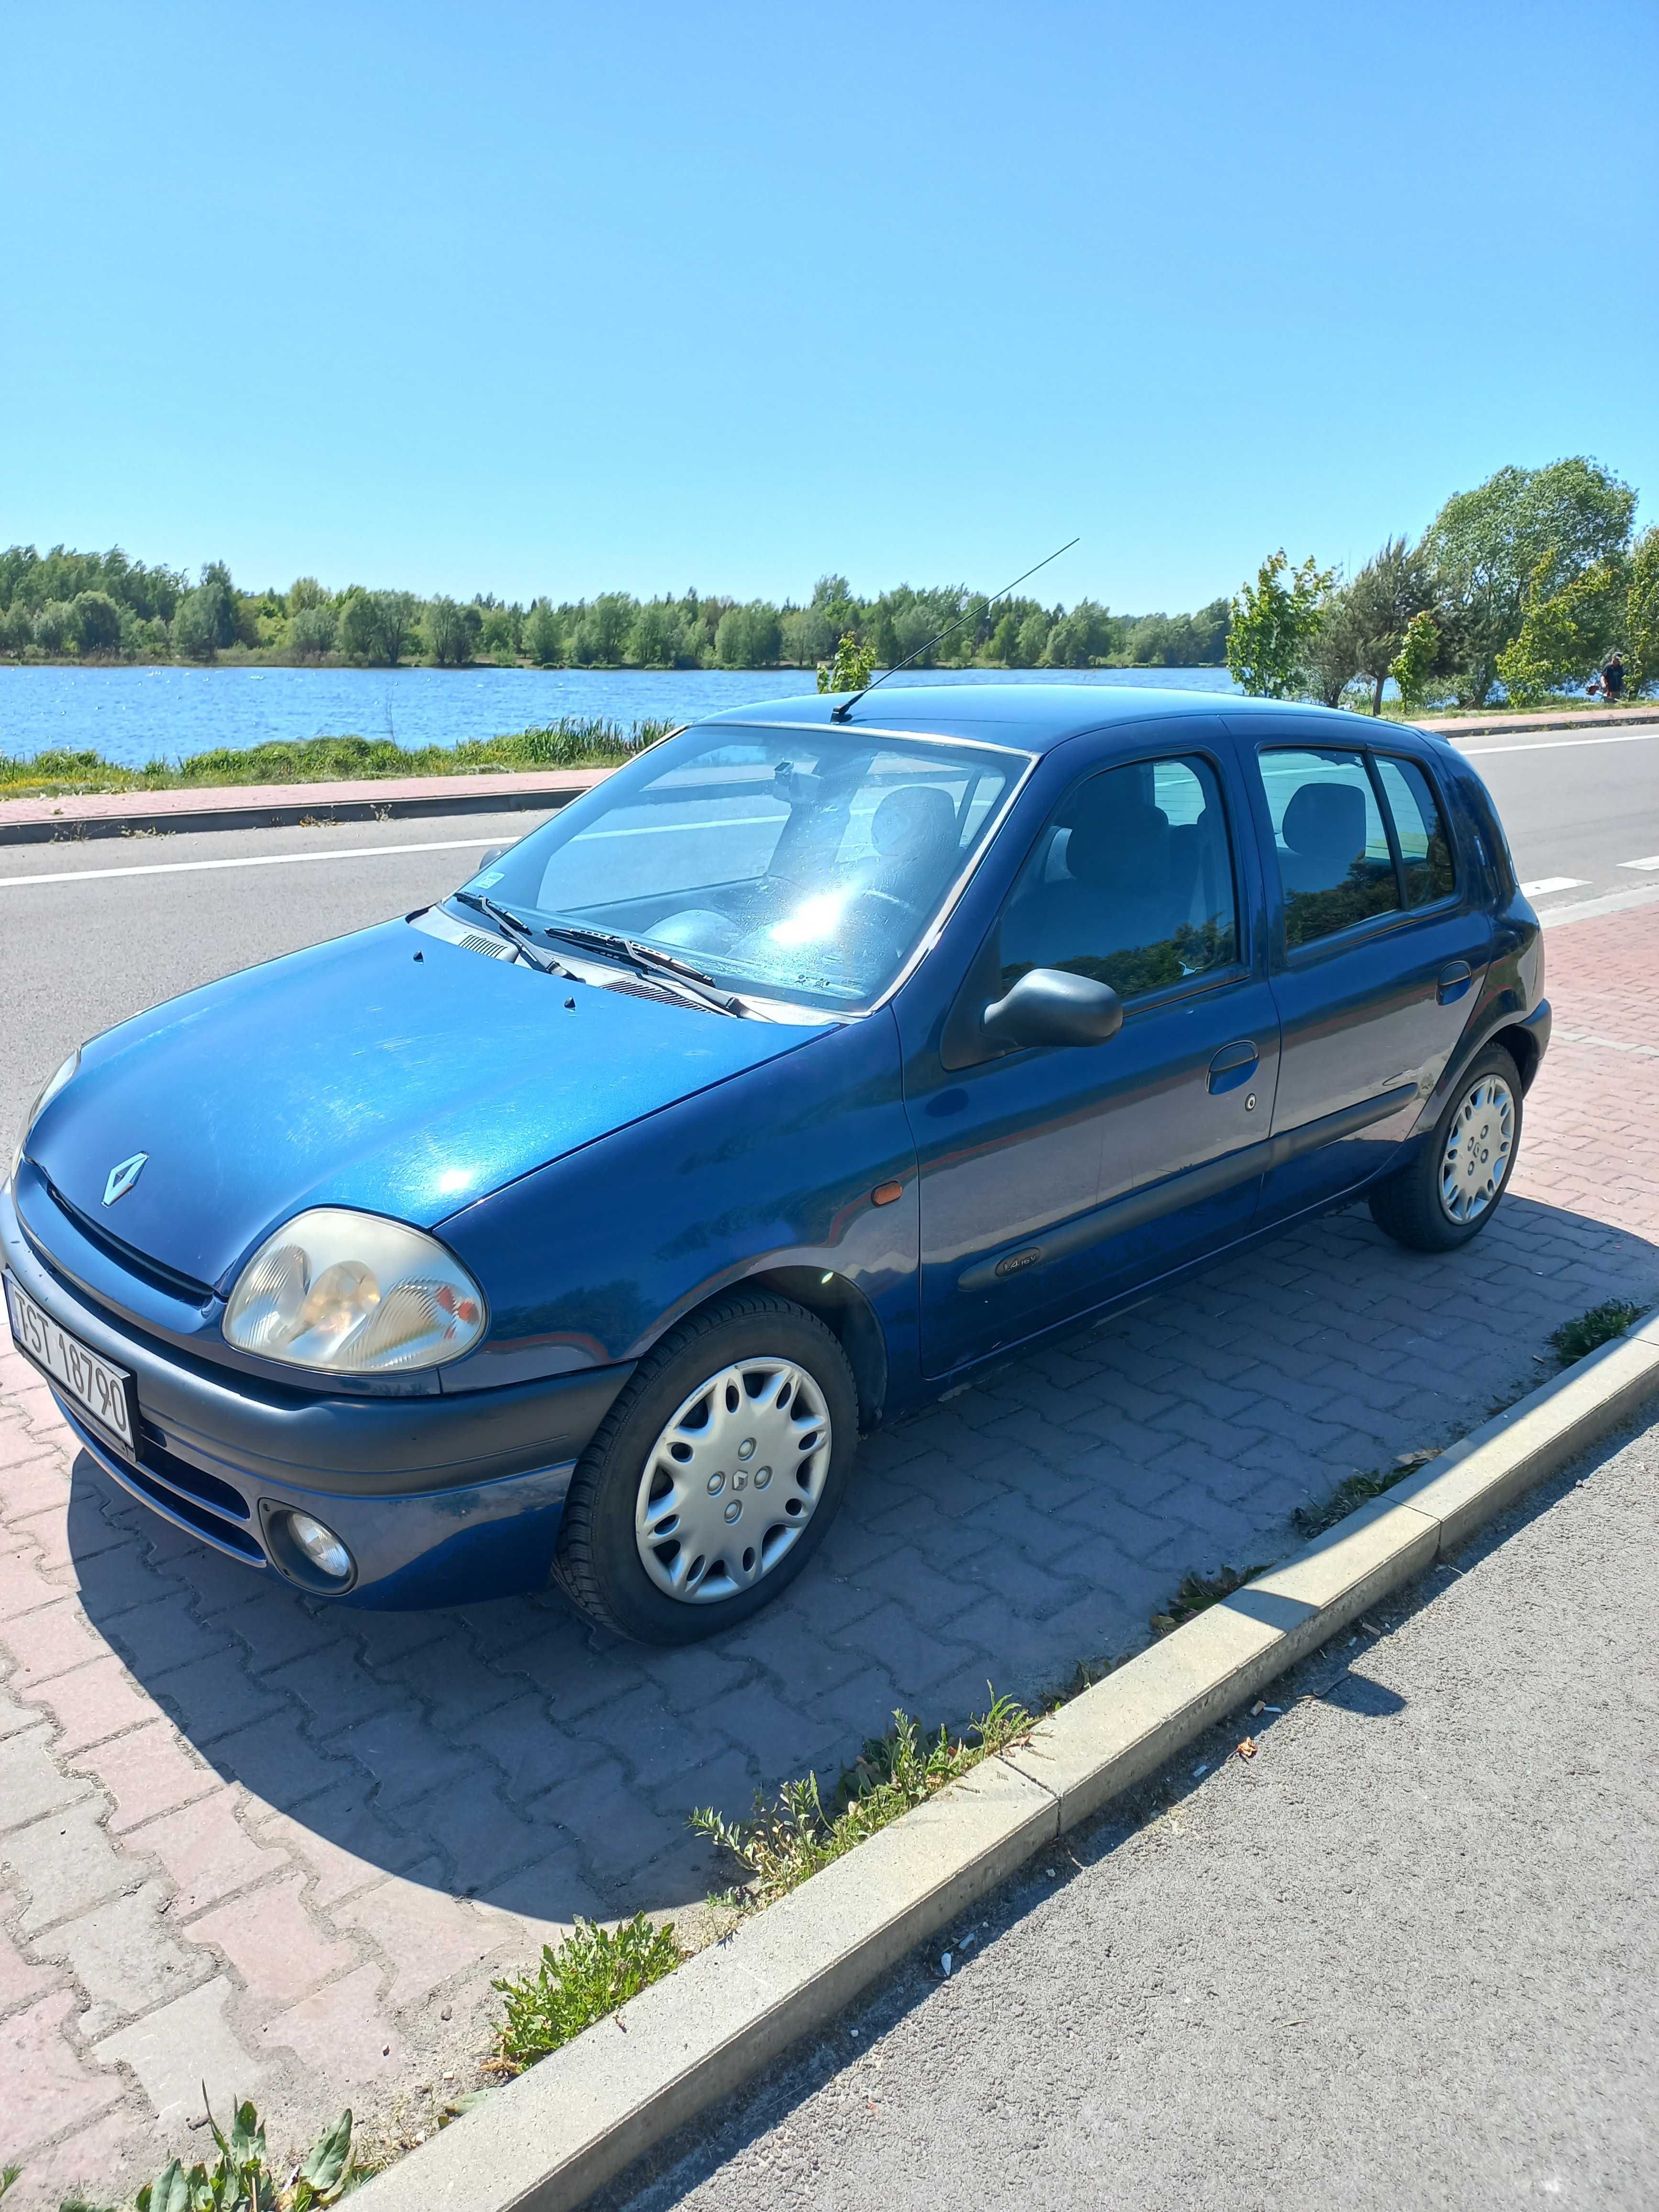 Renault Clio II 1.4 16v benzyna, moc 98km, 5-cio drzwiowy, 2001 rok